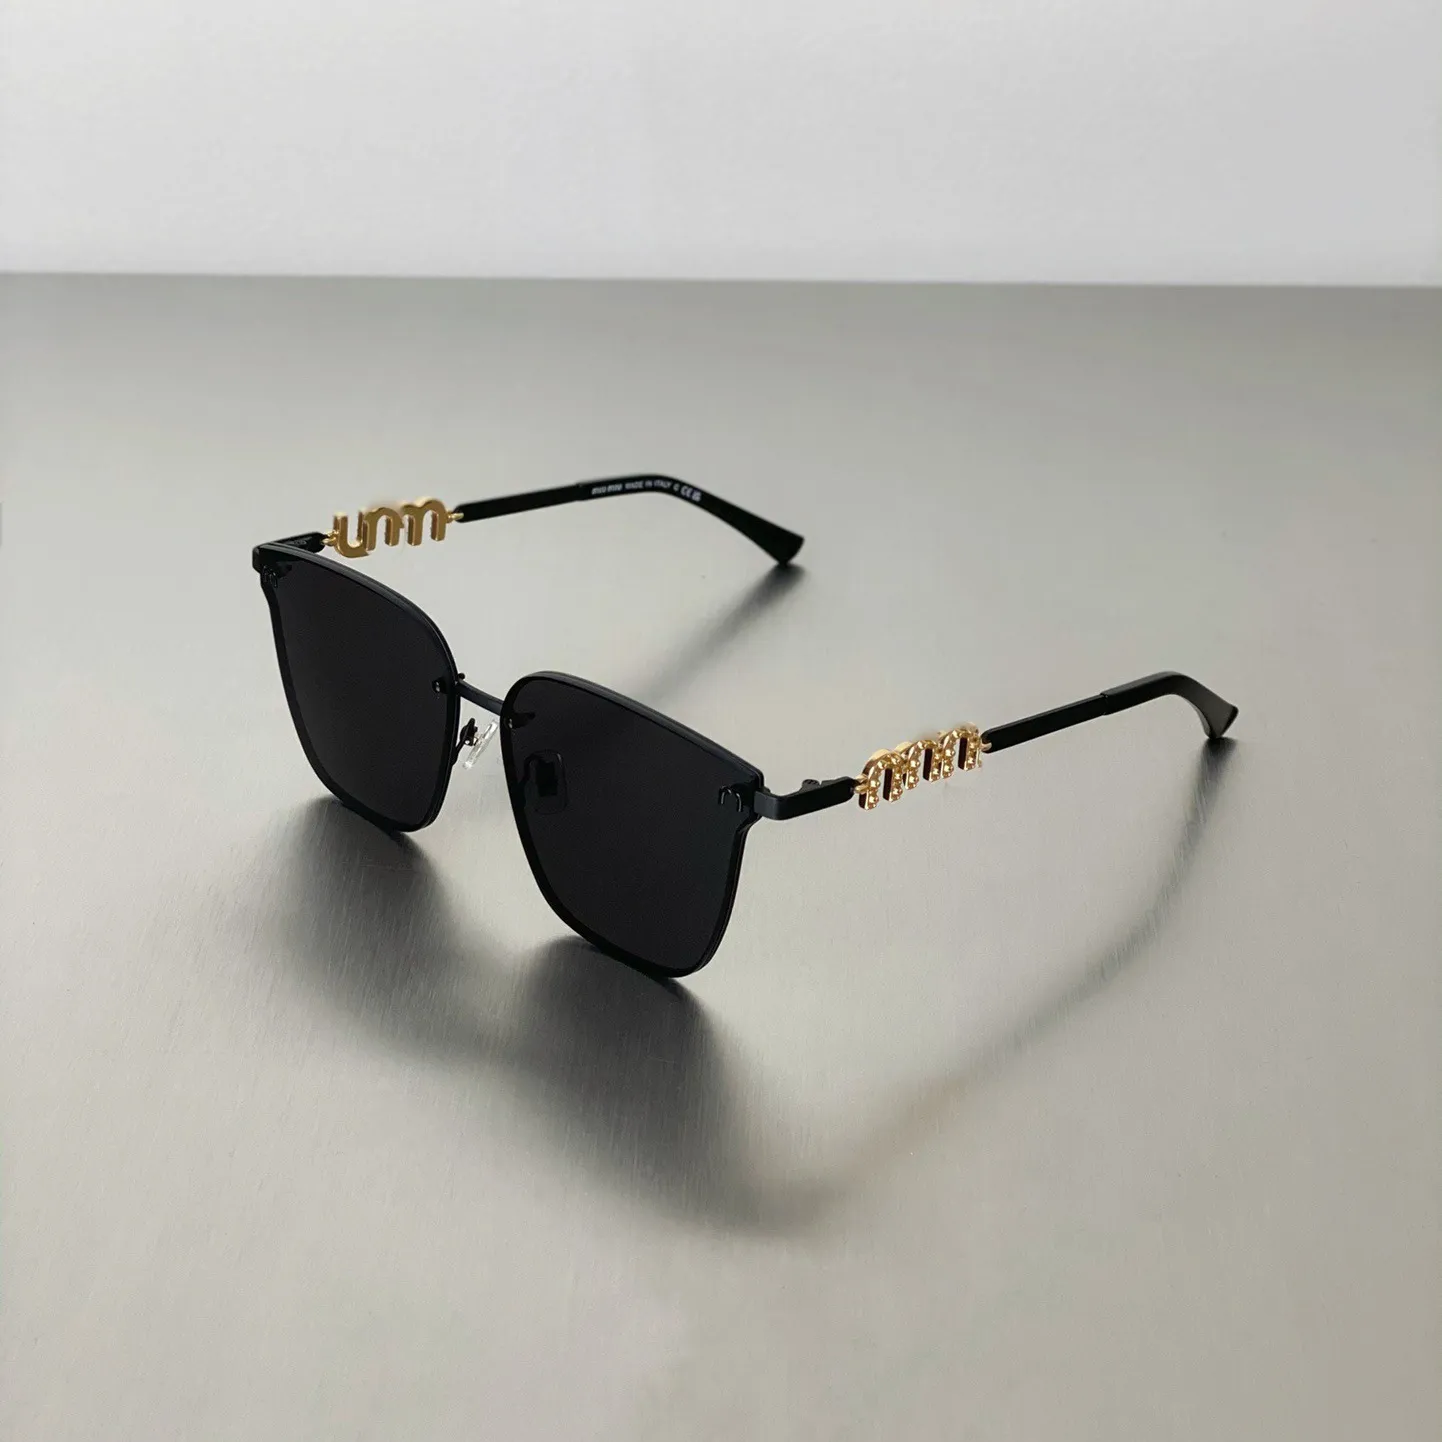 Designer occhiali da sole femminile bicchieri in metallo per donne e uomini Accessori da viaggio per occhiali occhiali occhiali